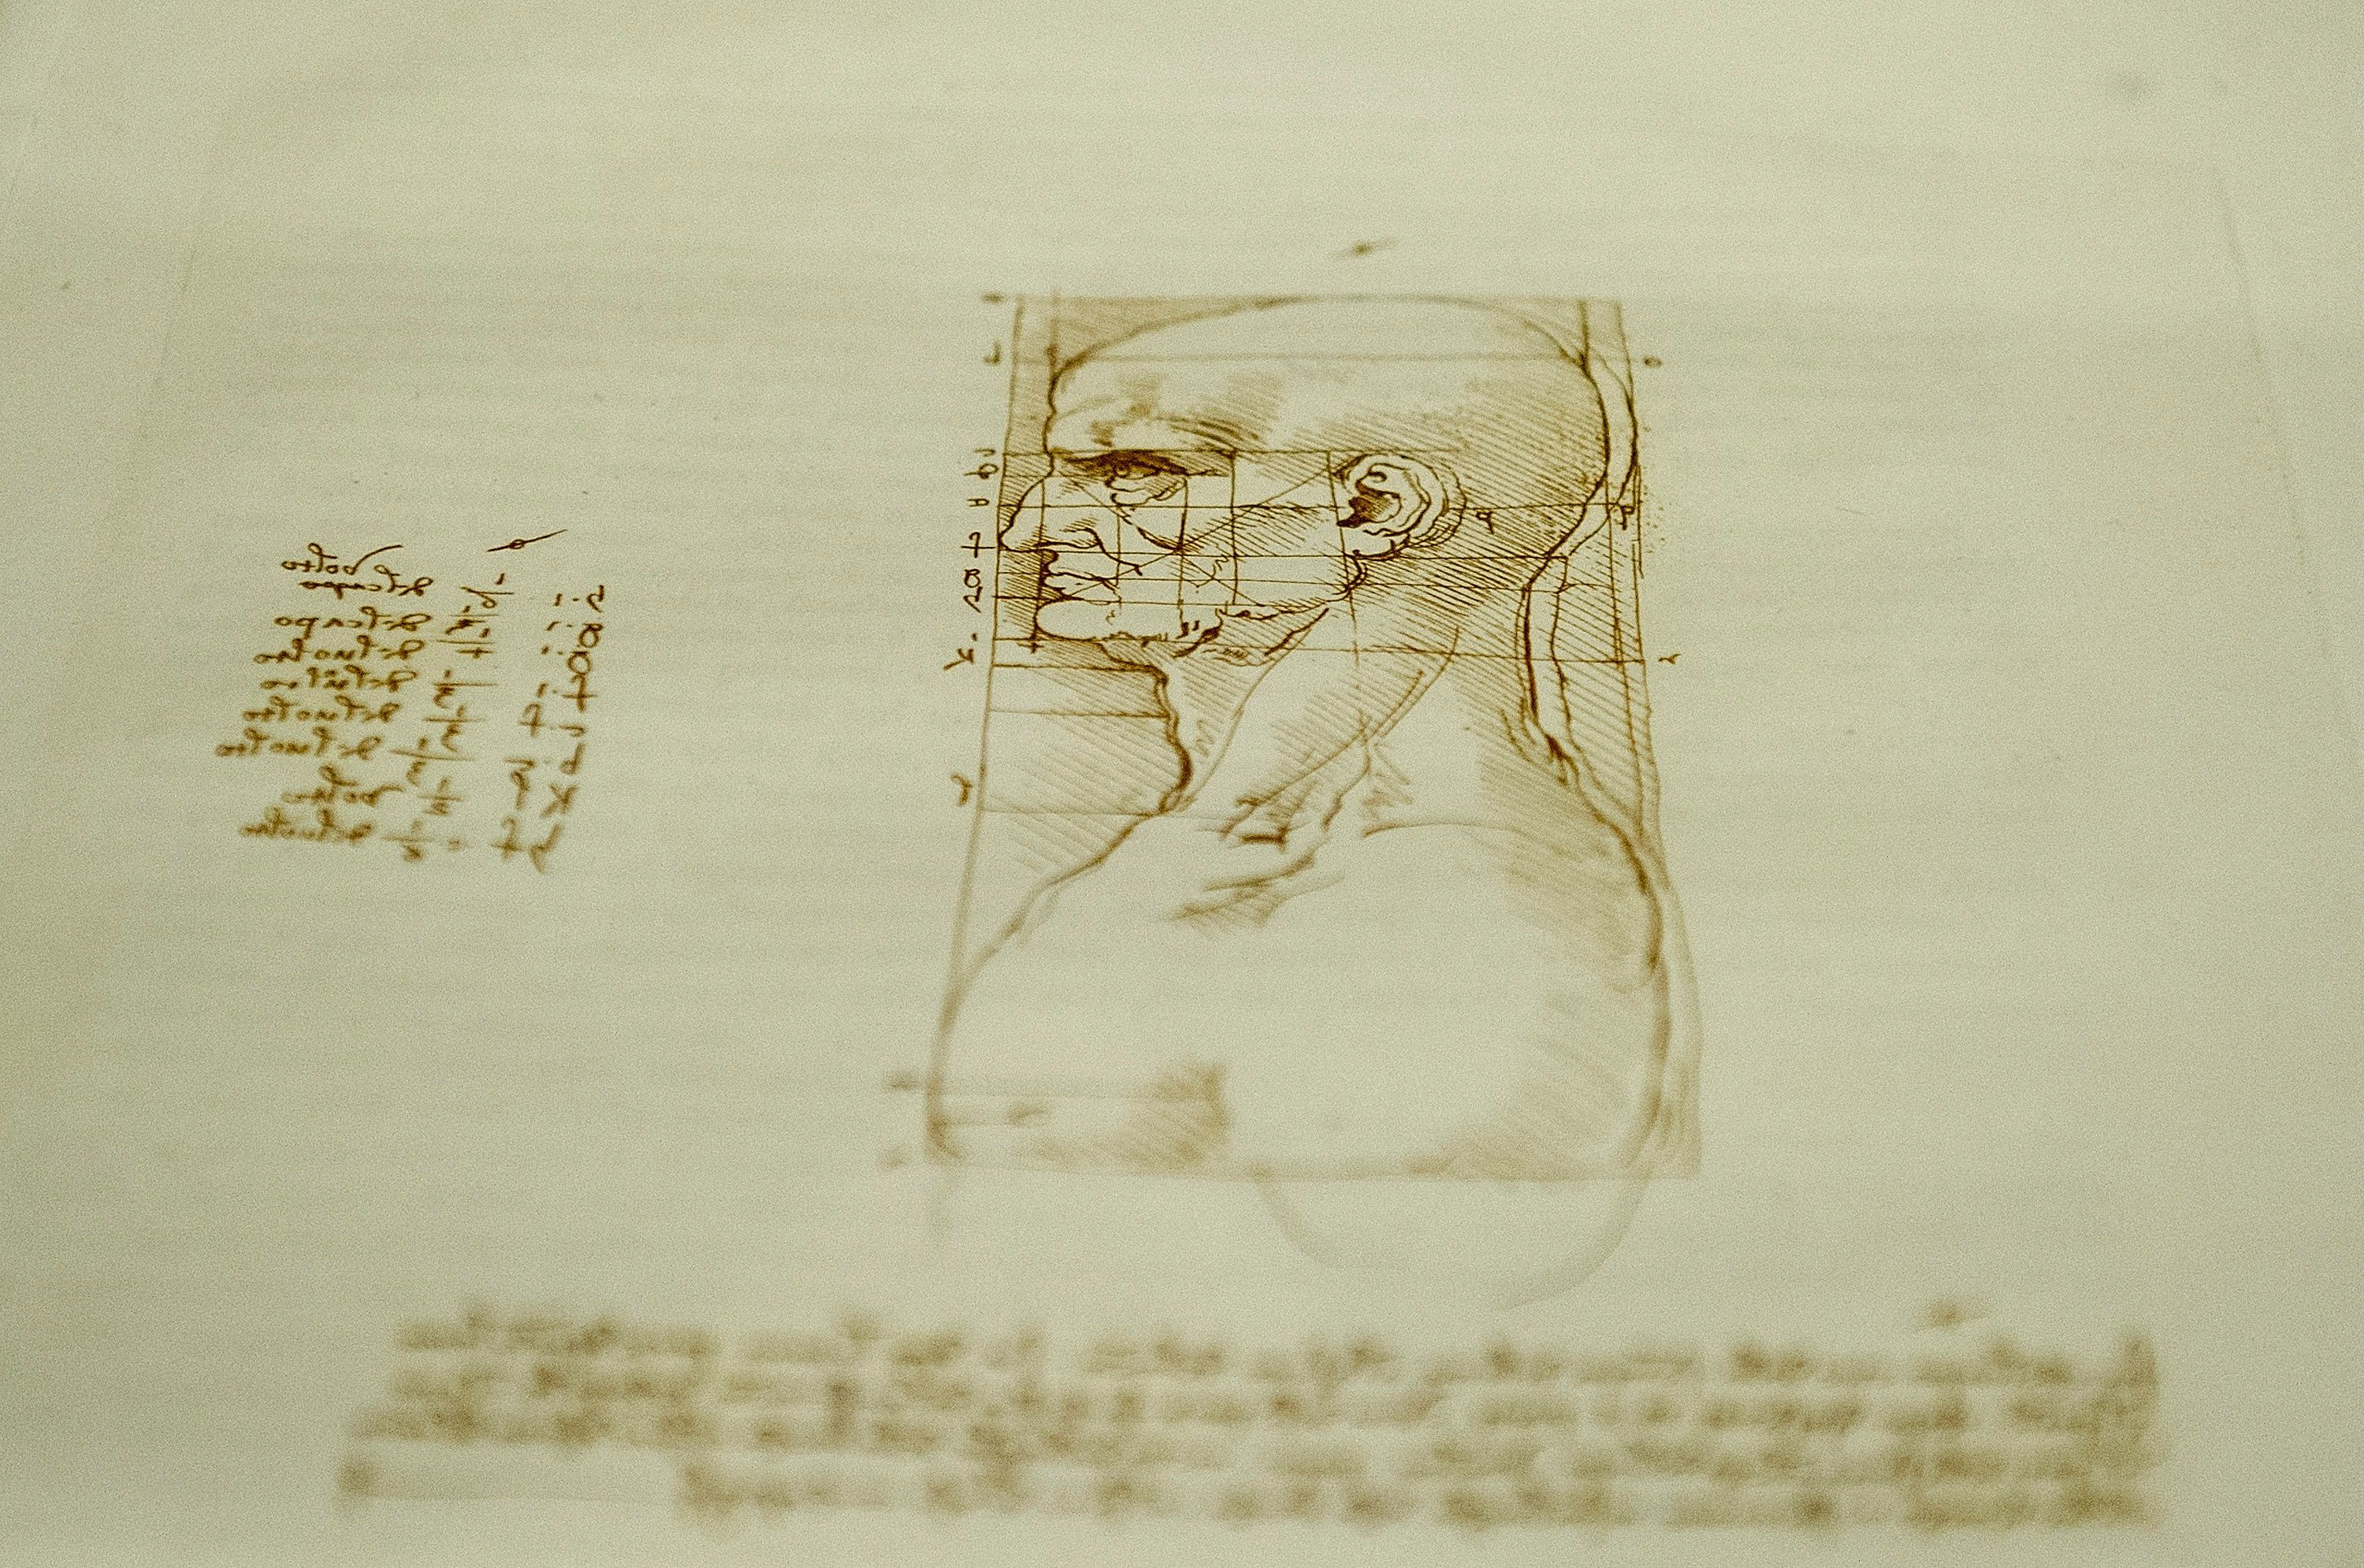 Тръжната къща твърди, че непозната творба на Леонардо не е откривана от 15 години